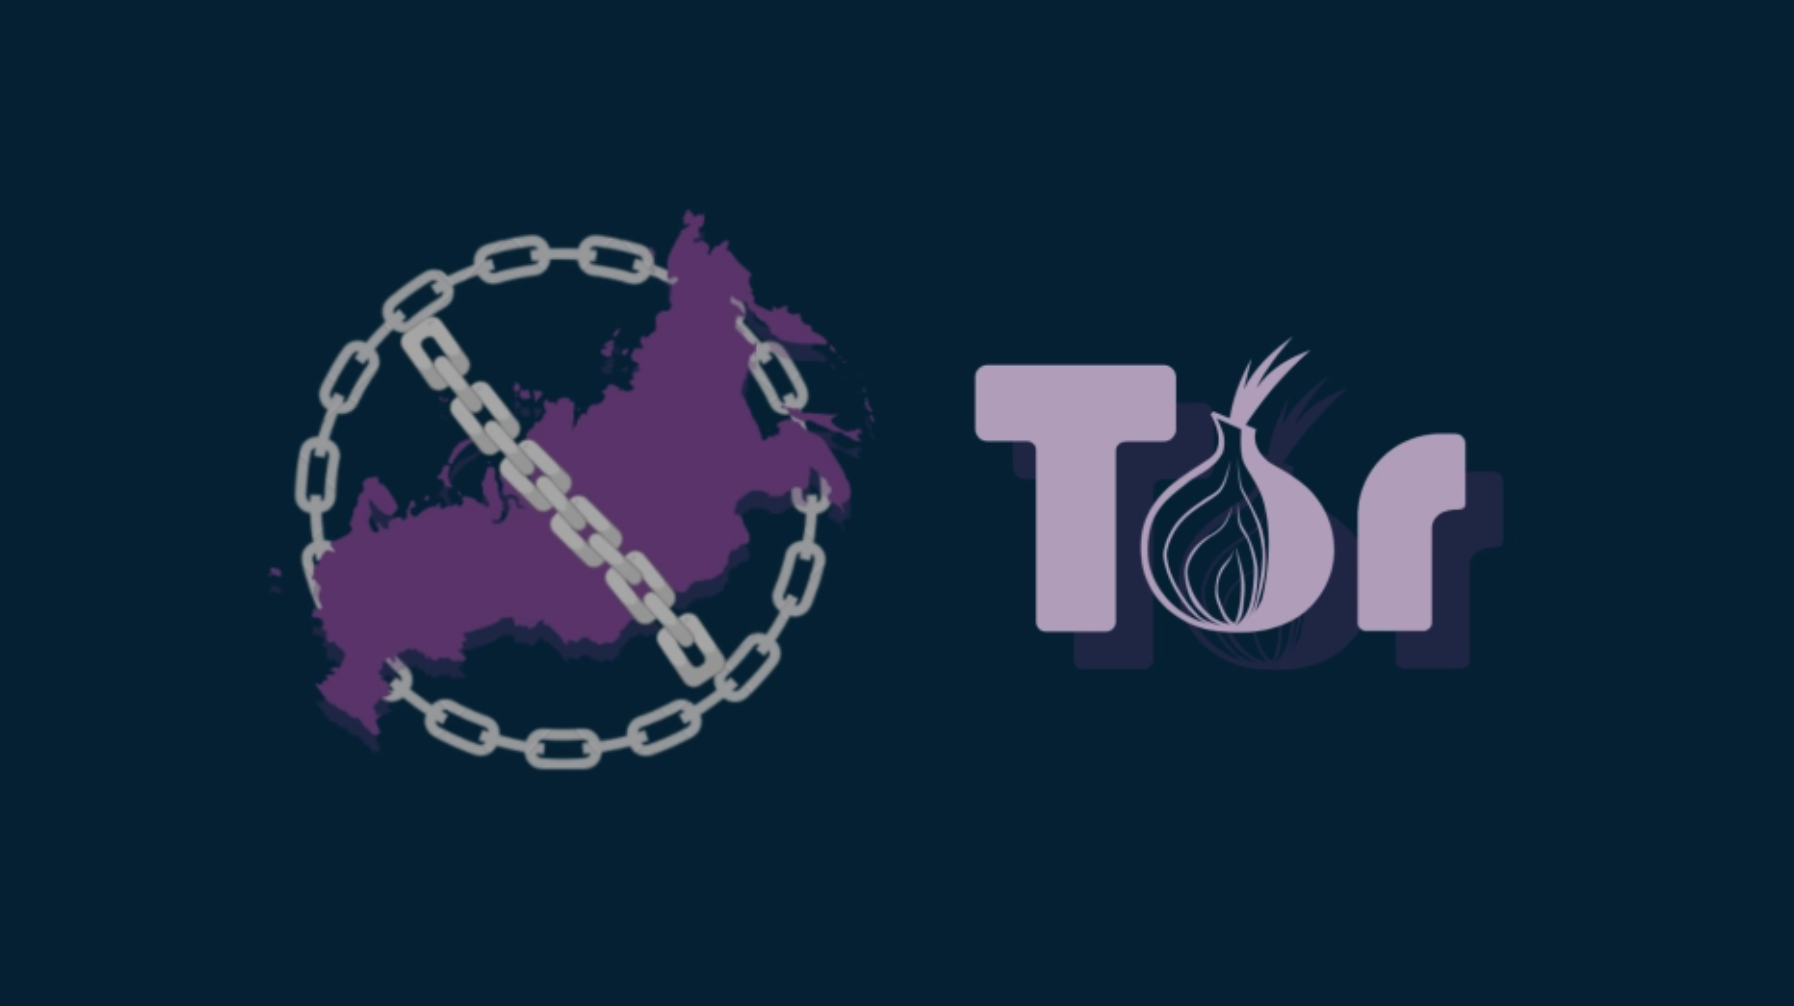 Tor browser russian mega тор браузер для ios скачать бесплатно на русском последняя версия мега